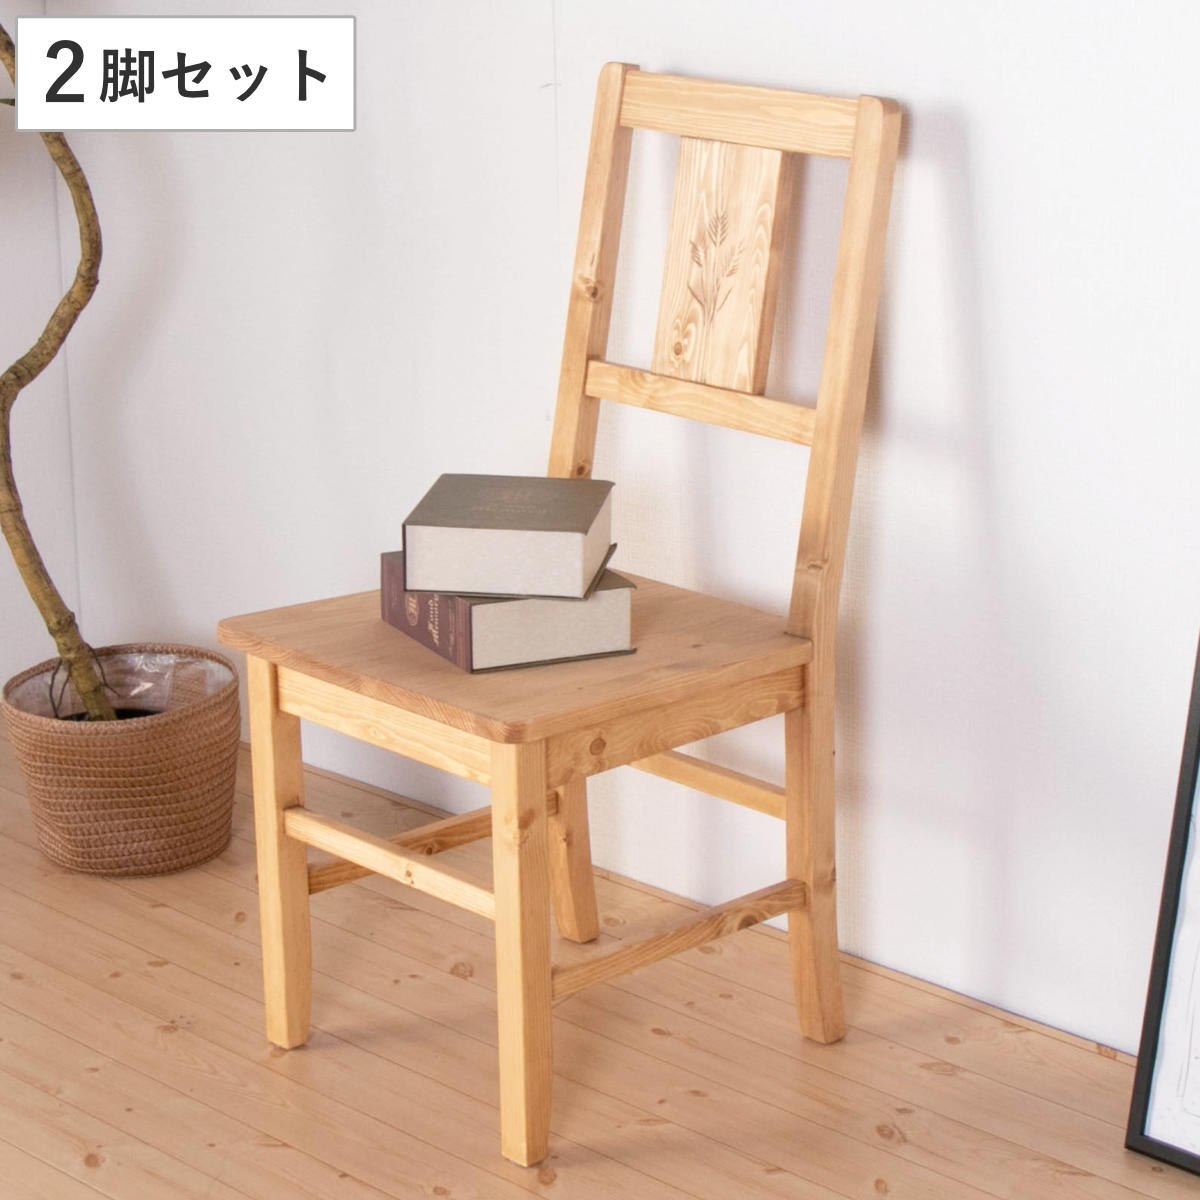 ダイニングチェア パイン無垢材 シンプル チェア 木製 - 椅子/チェア